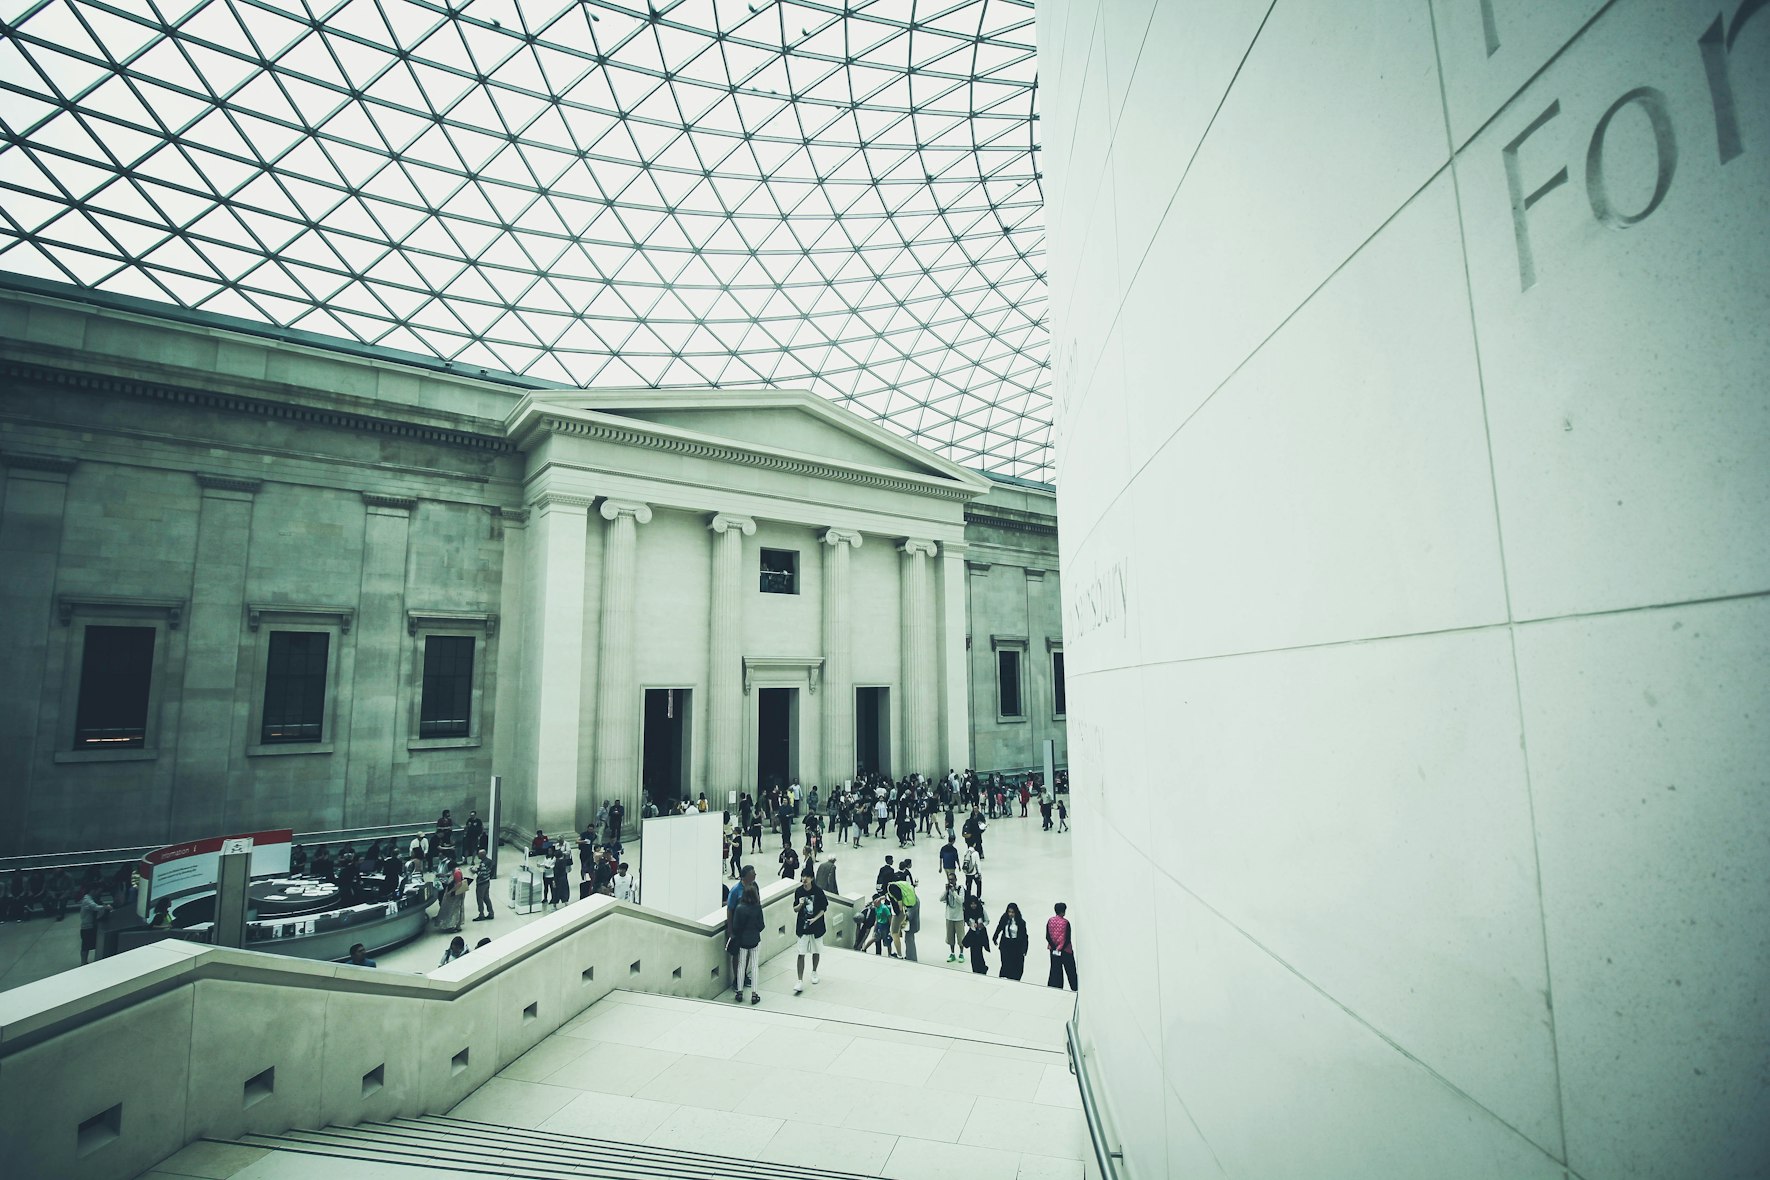 Haiku aanbidden Gedrag Gratis musea in Londen: deze 10 museums in Londen kun je gratis bezoeken |  WAT ZIJ ZEGT